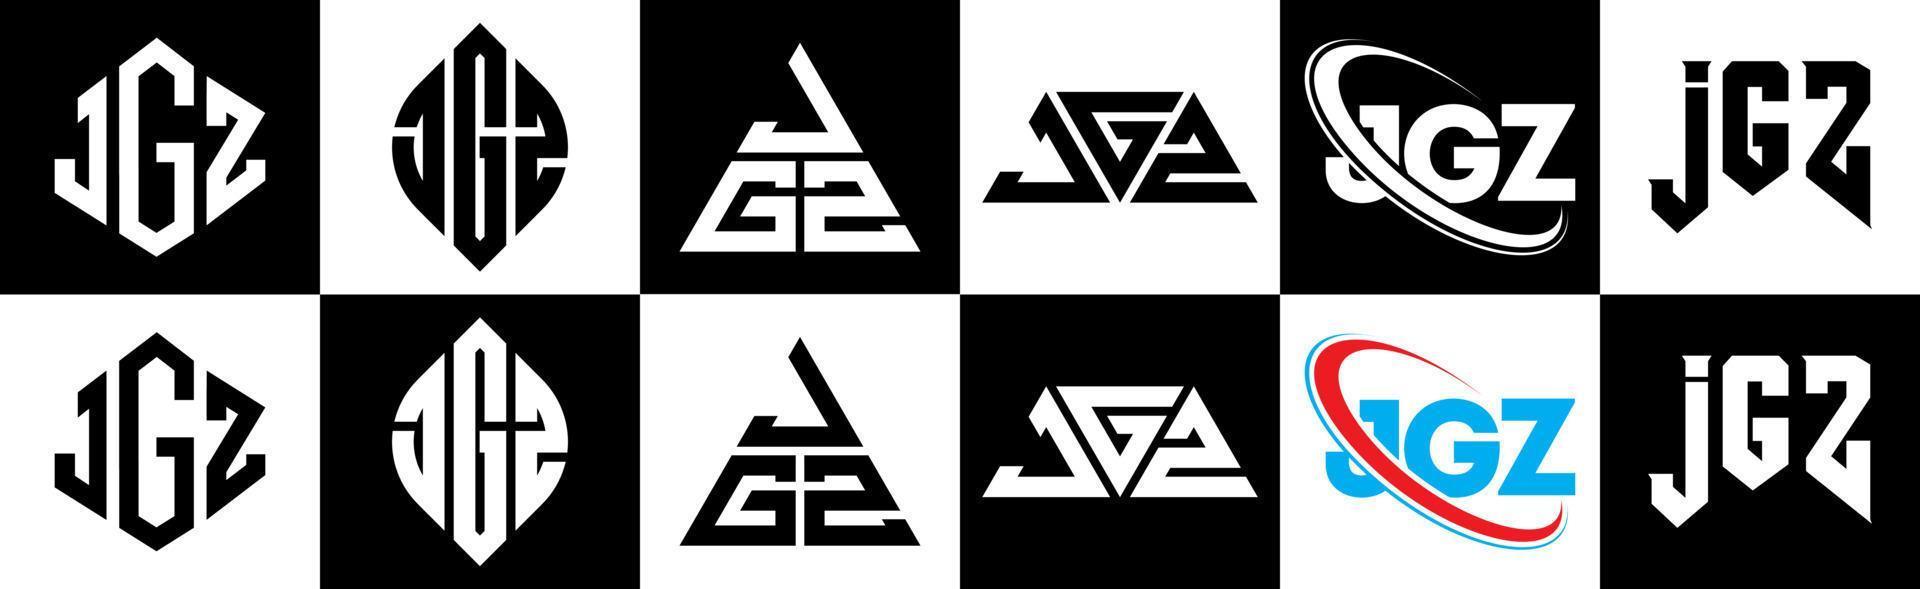 jgz-Buchstaben-Logo-Design in sechs Stilen. jgz Polygon, Kreis, Dreieck, Sechseck, flacher und einfacher Stil mit schwarz-weißem Buchstabenlogo in einer Zeichenfläche. jgz minimalistisches und klassisches Logo vektor